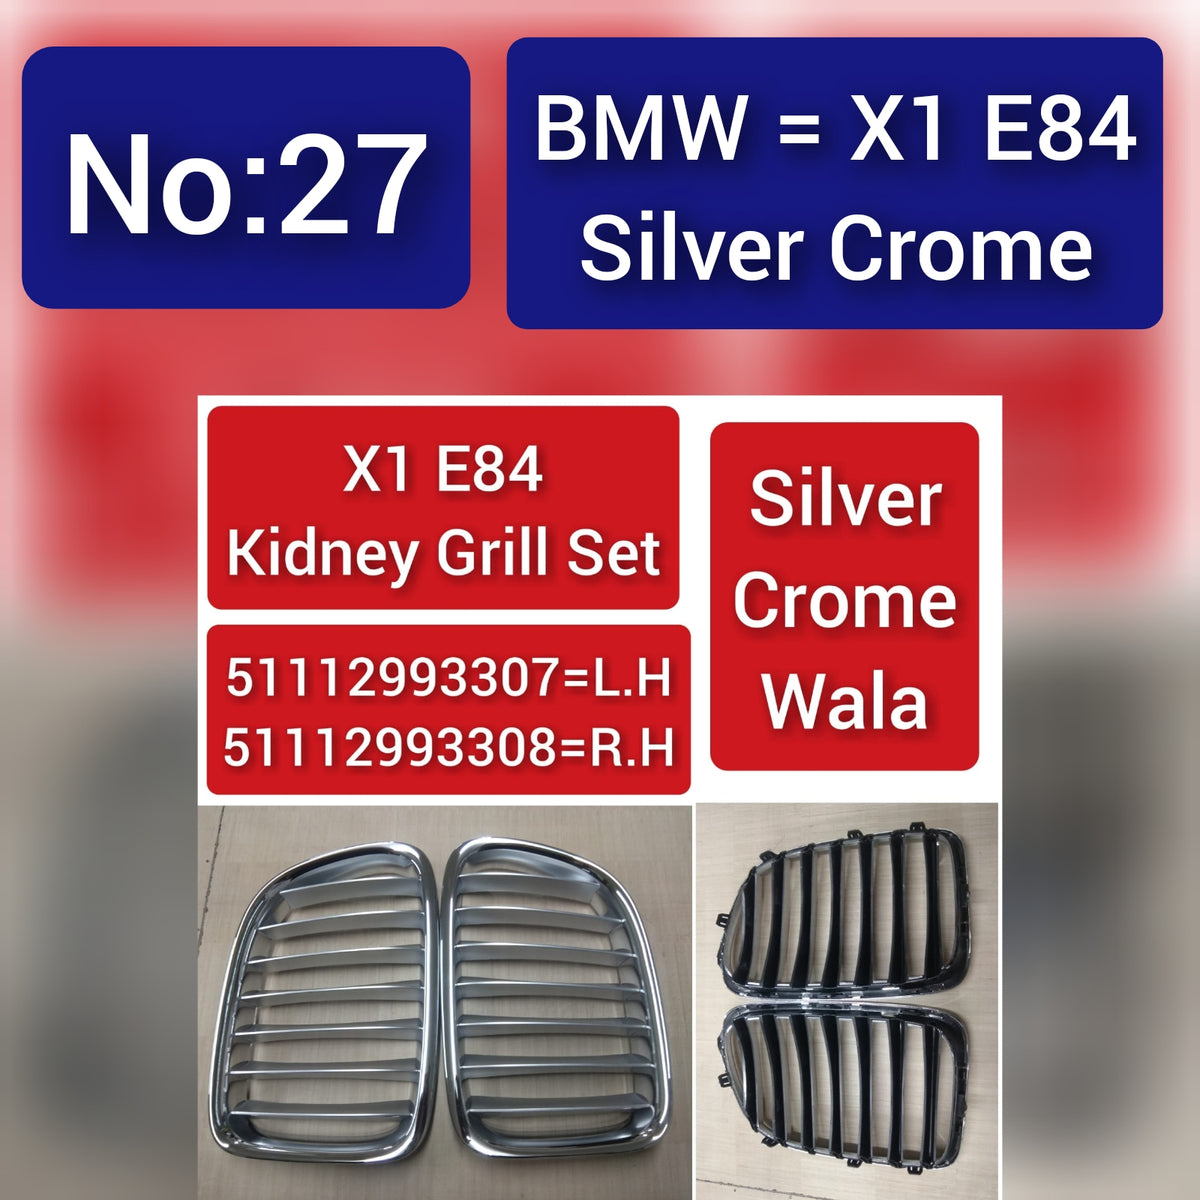 BMW = X1 E84 Silver Crome X1 E84 Kidney Grill Set 51112993307=L.H 51112993308=R.H,Silver Crome Wala  Tag 27